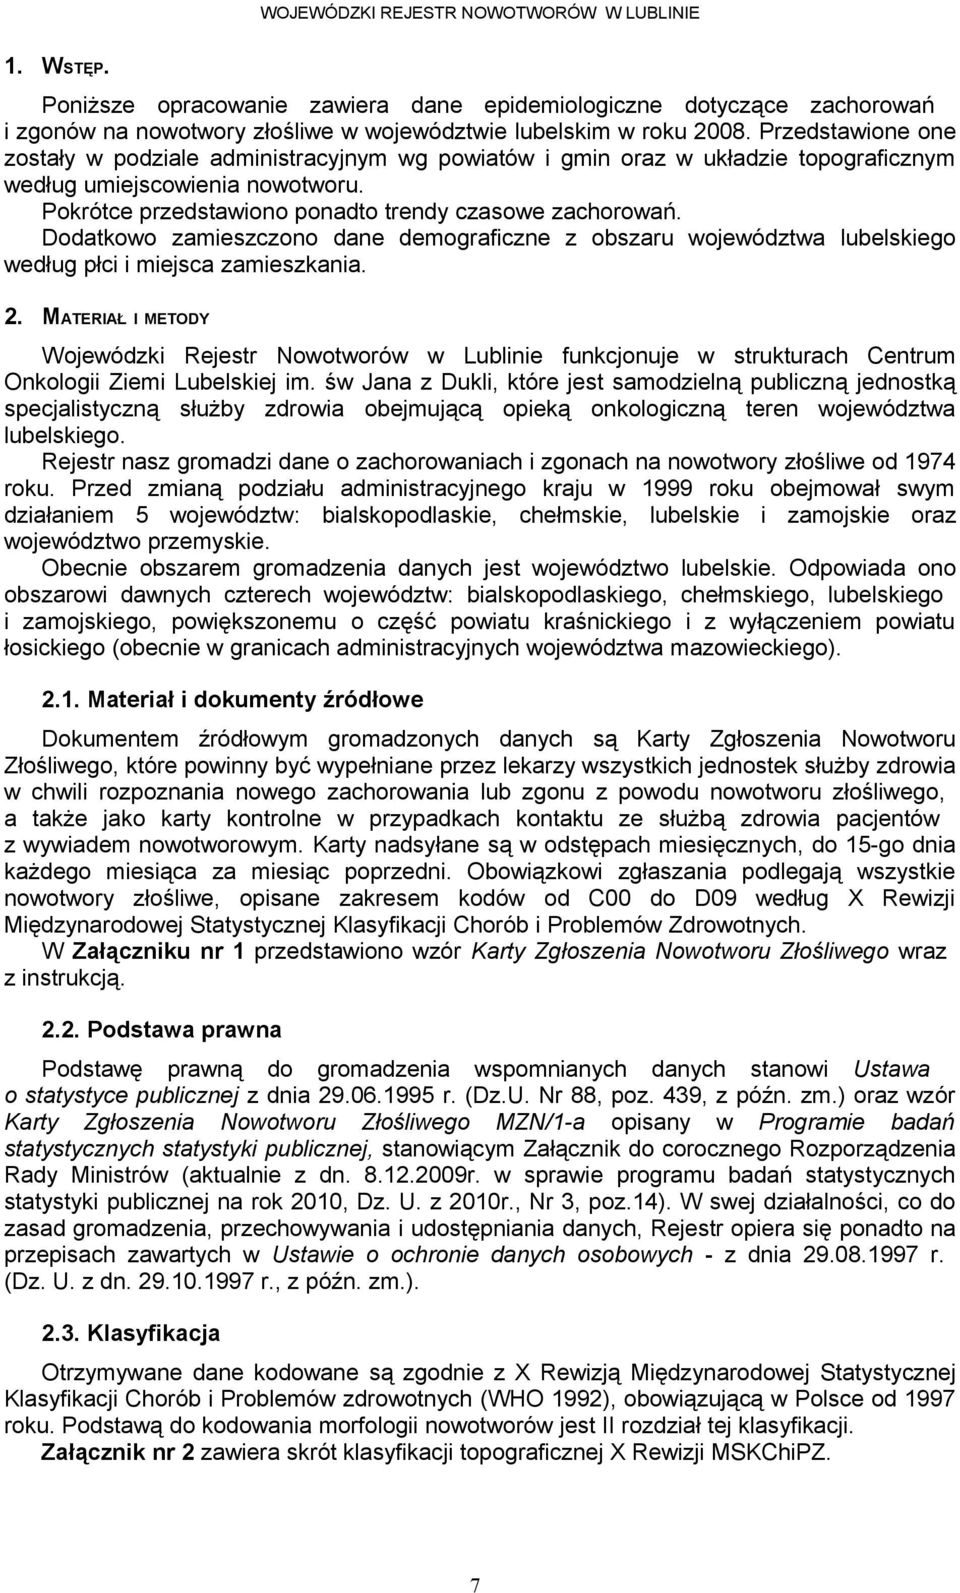 Dodatkowo zamieszczono dane demograficzne z obszaru województwa lubelskiego według płci i miejsca zamieszkania.